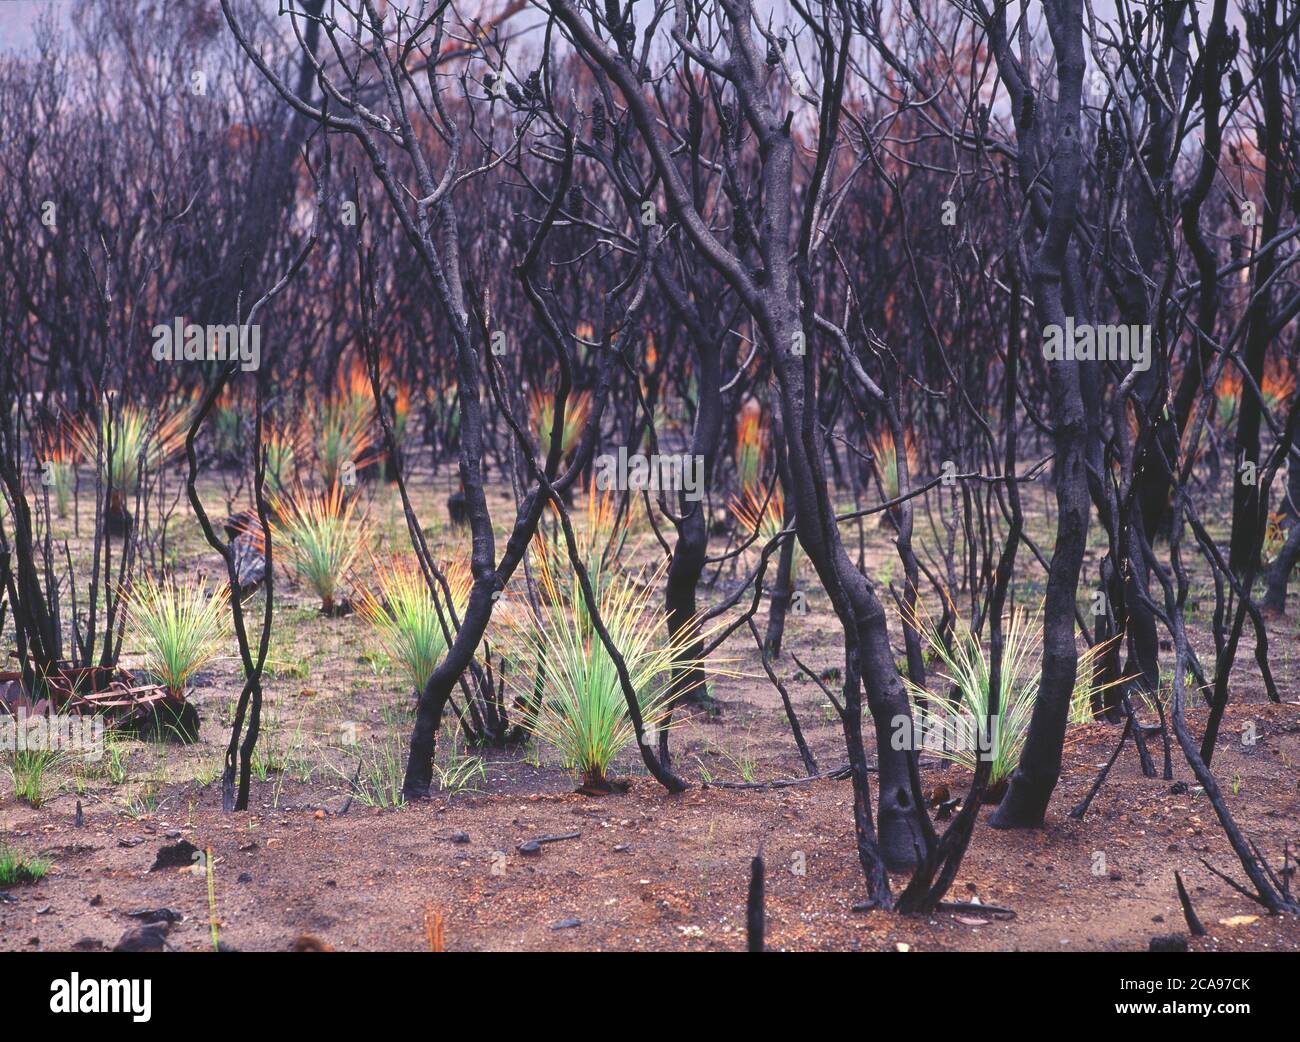 Los árboles de pasto quemados (Xanthorrhoea australis) se regeneran después de incendios de matorrales en Nueva Gales del Sur, Australia Foto de stock